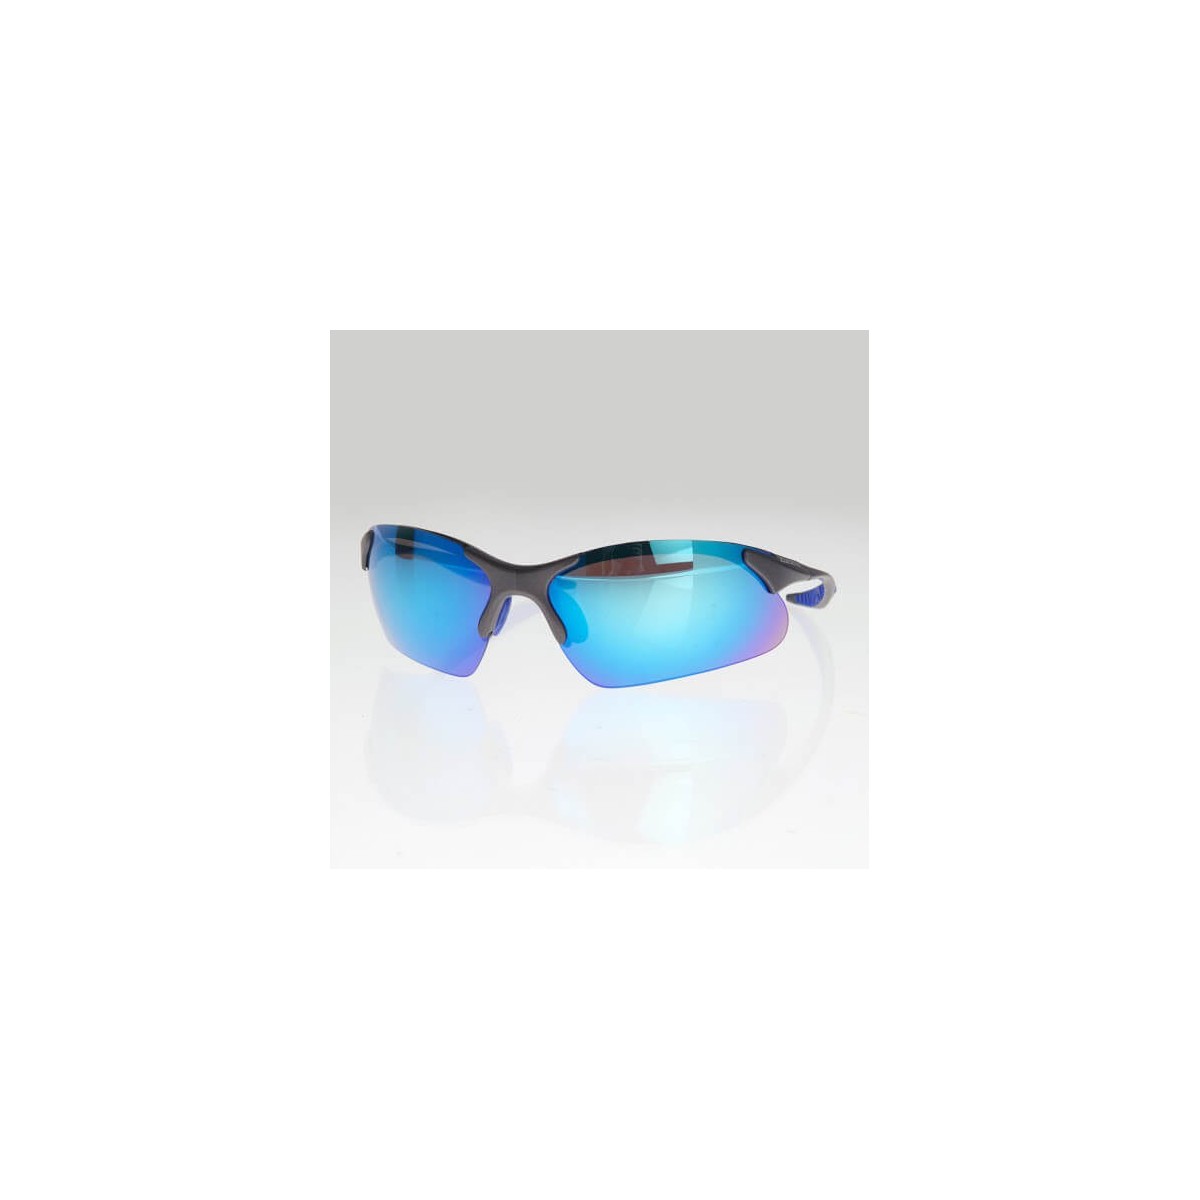 One oder günstig Kaufen-Sonnenbrille Zone3 blau. Sonnenbrille Zone3 blau <![CDATA[Sonnenbrille Zone3 blau Diese Sonnenbrille eignet sich nicht nur perfekt für Rennen und Training, sondern kann auch als alltägliche Sonnenbrille mit Freizeitkleidung oder am Strand getragen werde